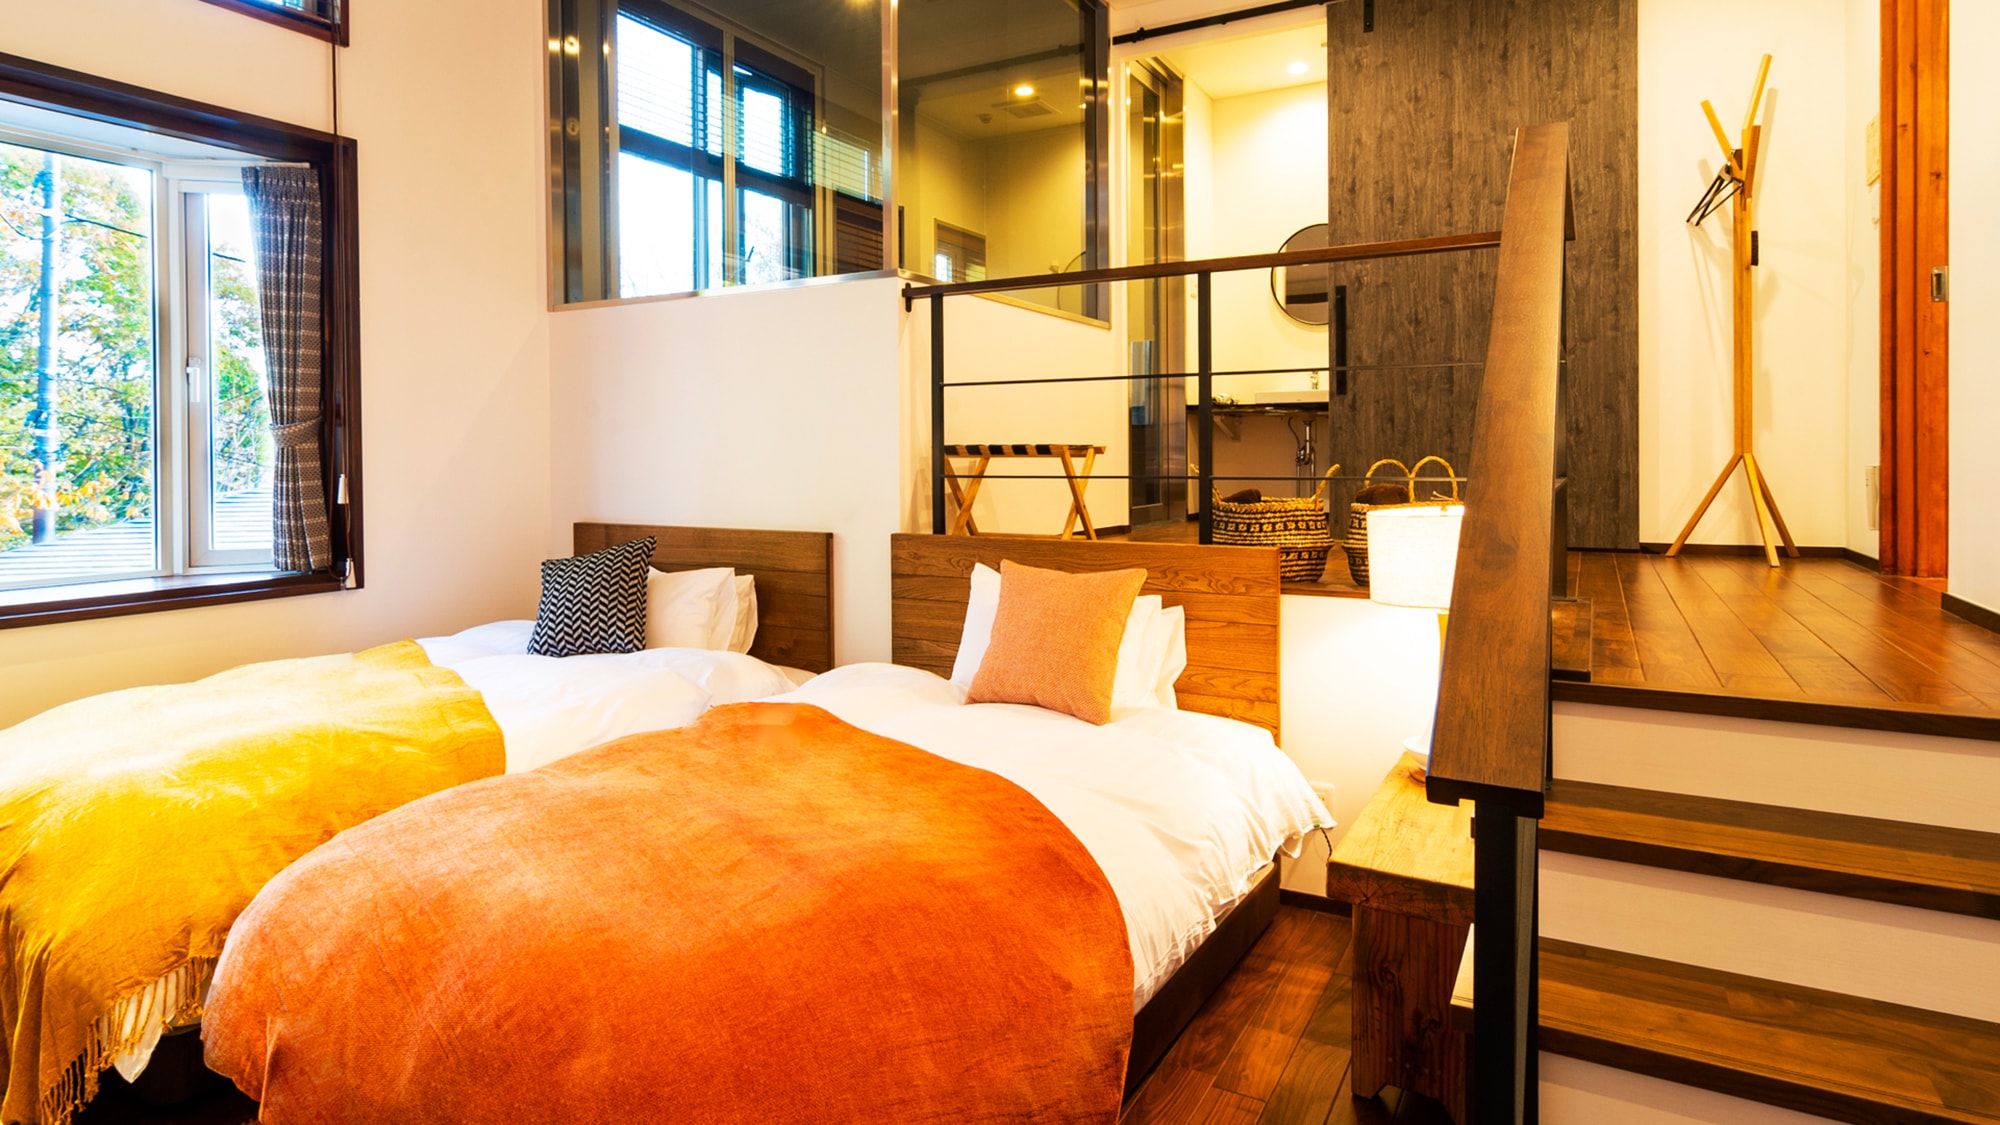 [Kamar suite] Pembaruan pada tahun 2019 Kamar luas dengan ambang batas setengah dua lantai